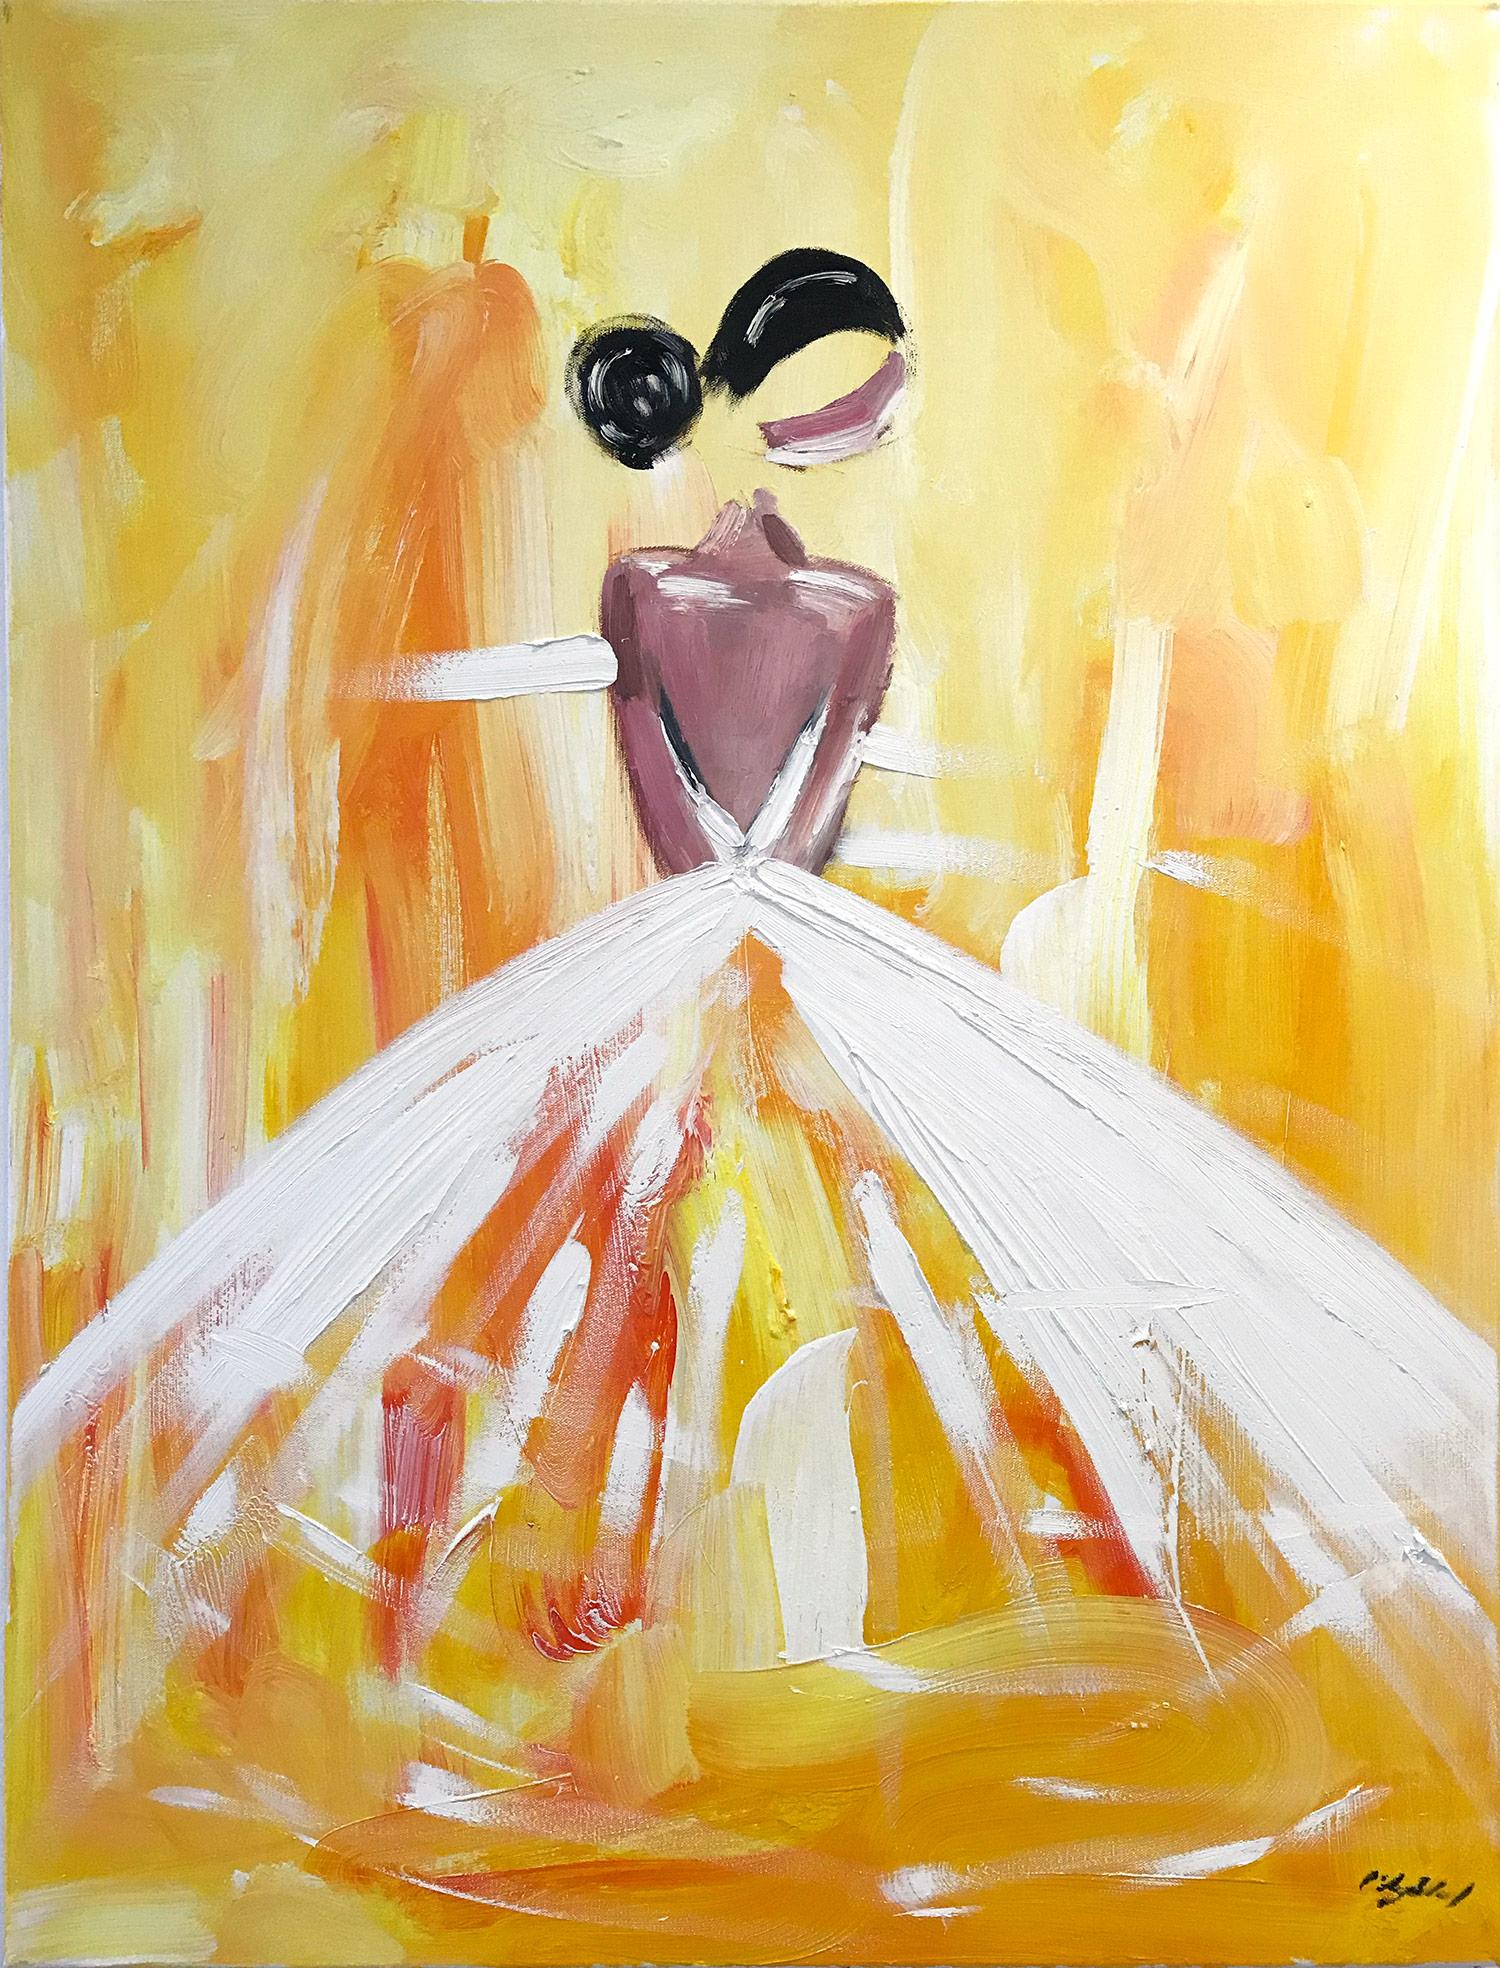 Figurative Painting Cindy Shaoul - "Madison" - Figure dans une robe de Chanel - Peinture à l'huile sur toile - Haute Couture française